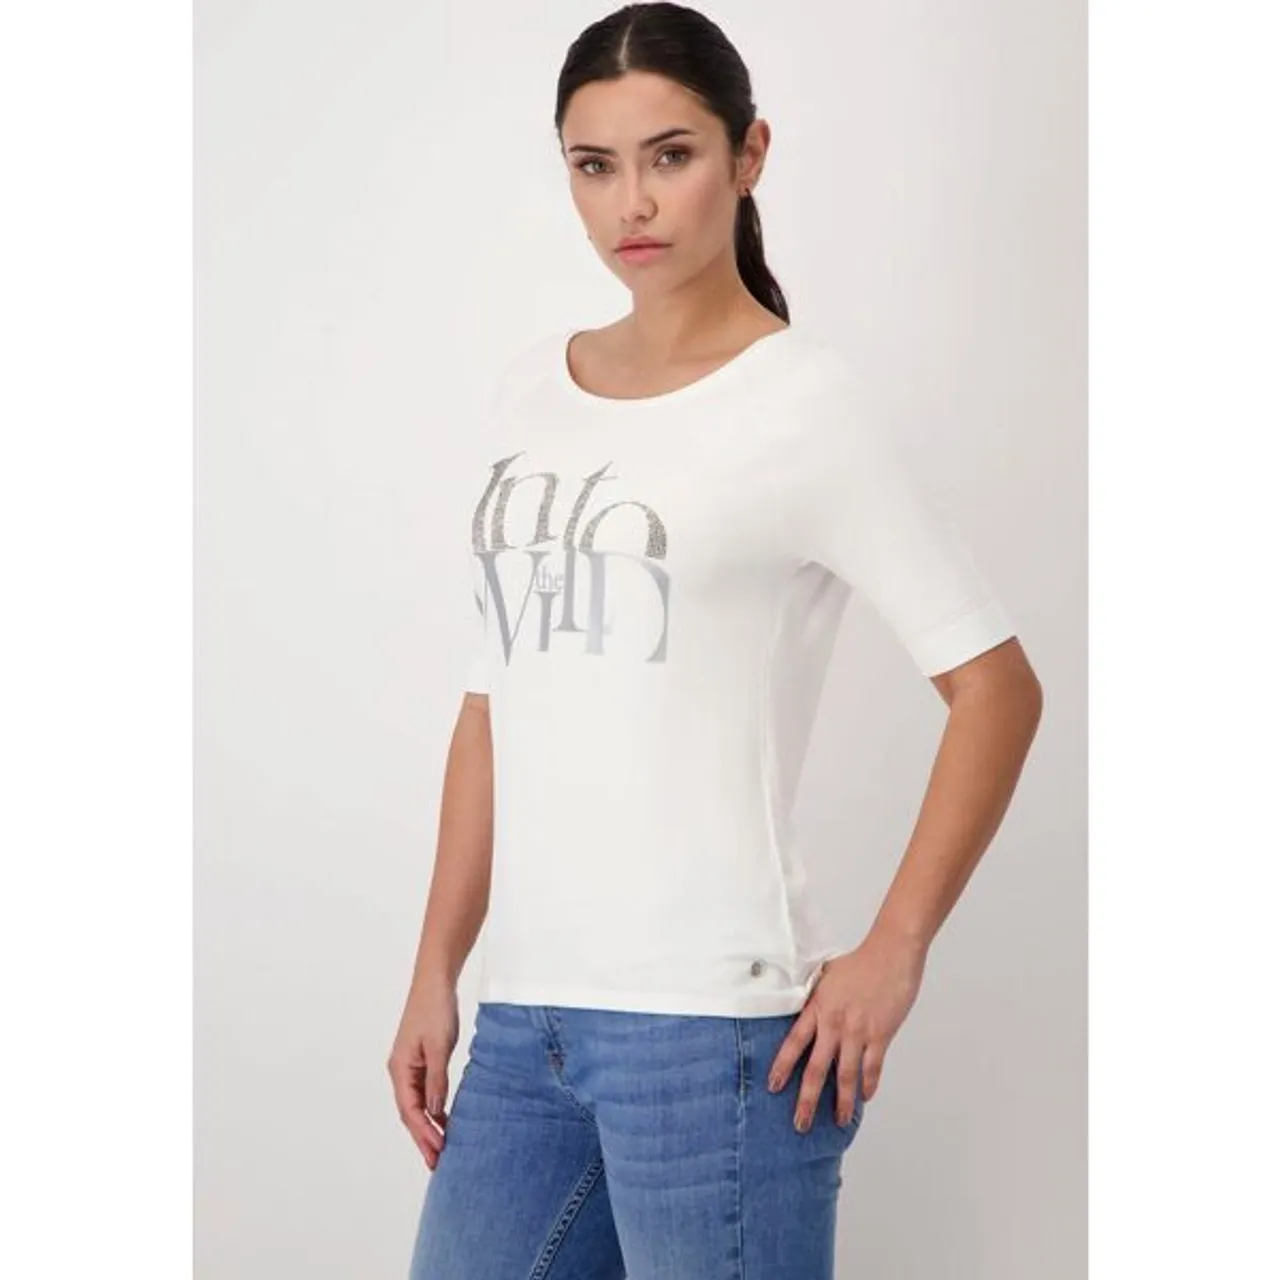 Rundhalsshirt MONARI Gr. 44, weiß (offwhite) Damen Shirts Jersey mit Frontprint